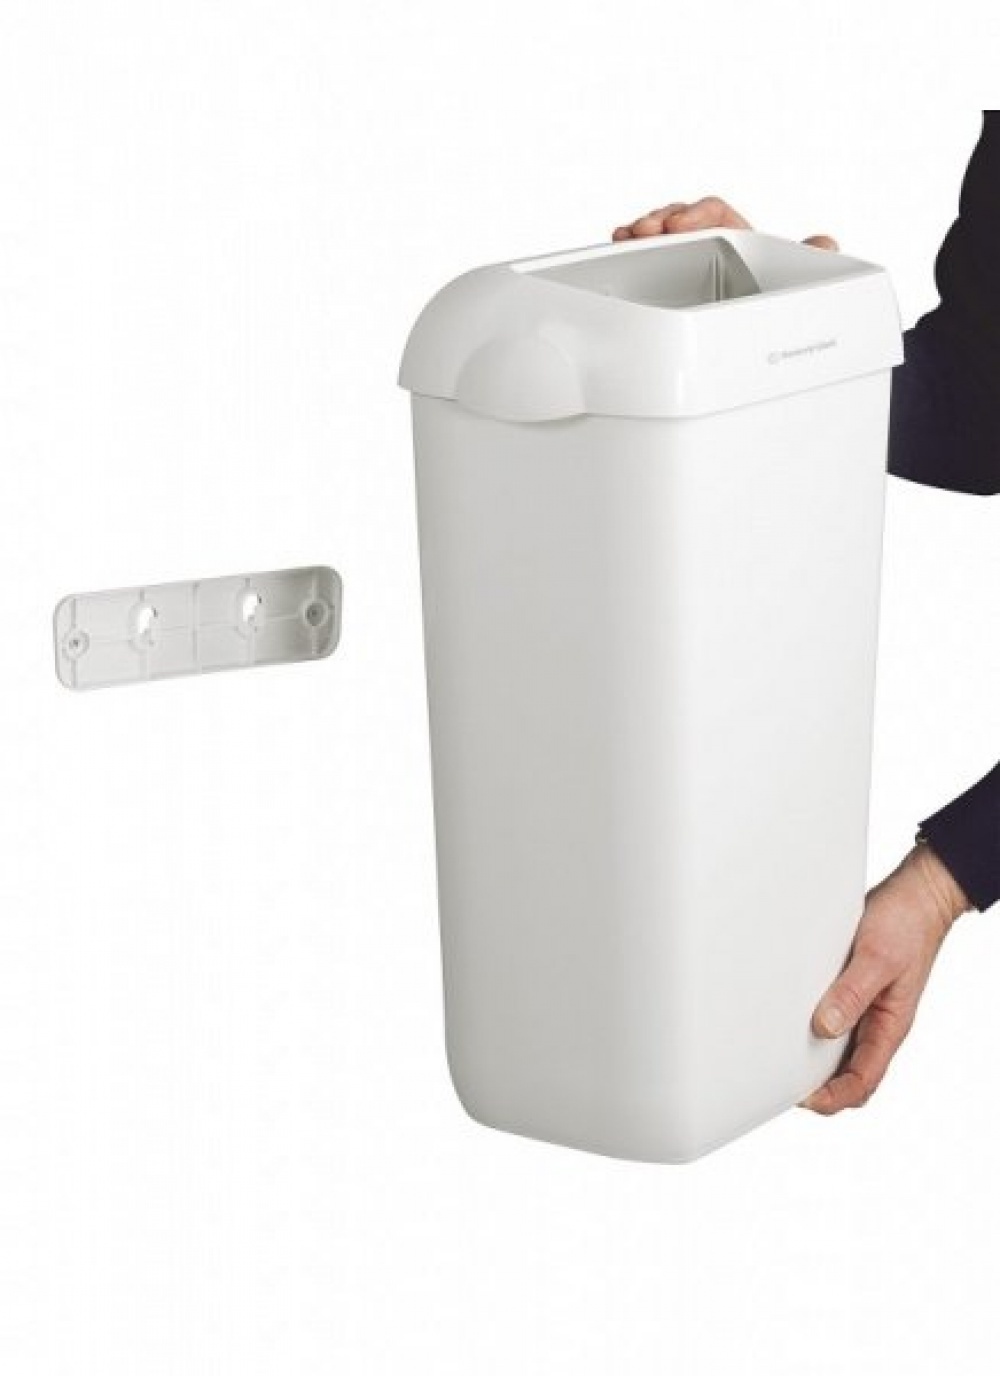 Пластиковая корзина для мусора Aquarius*